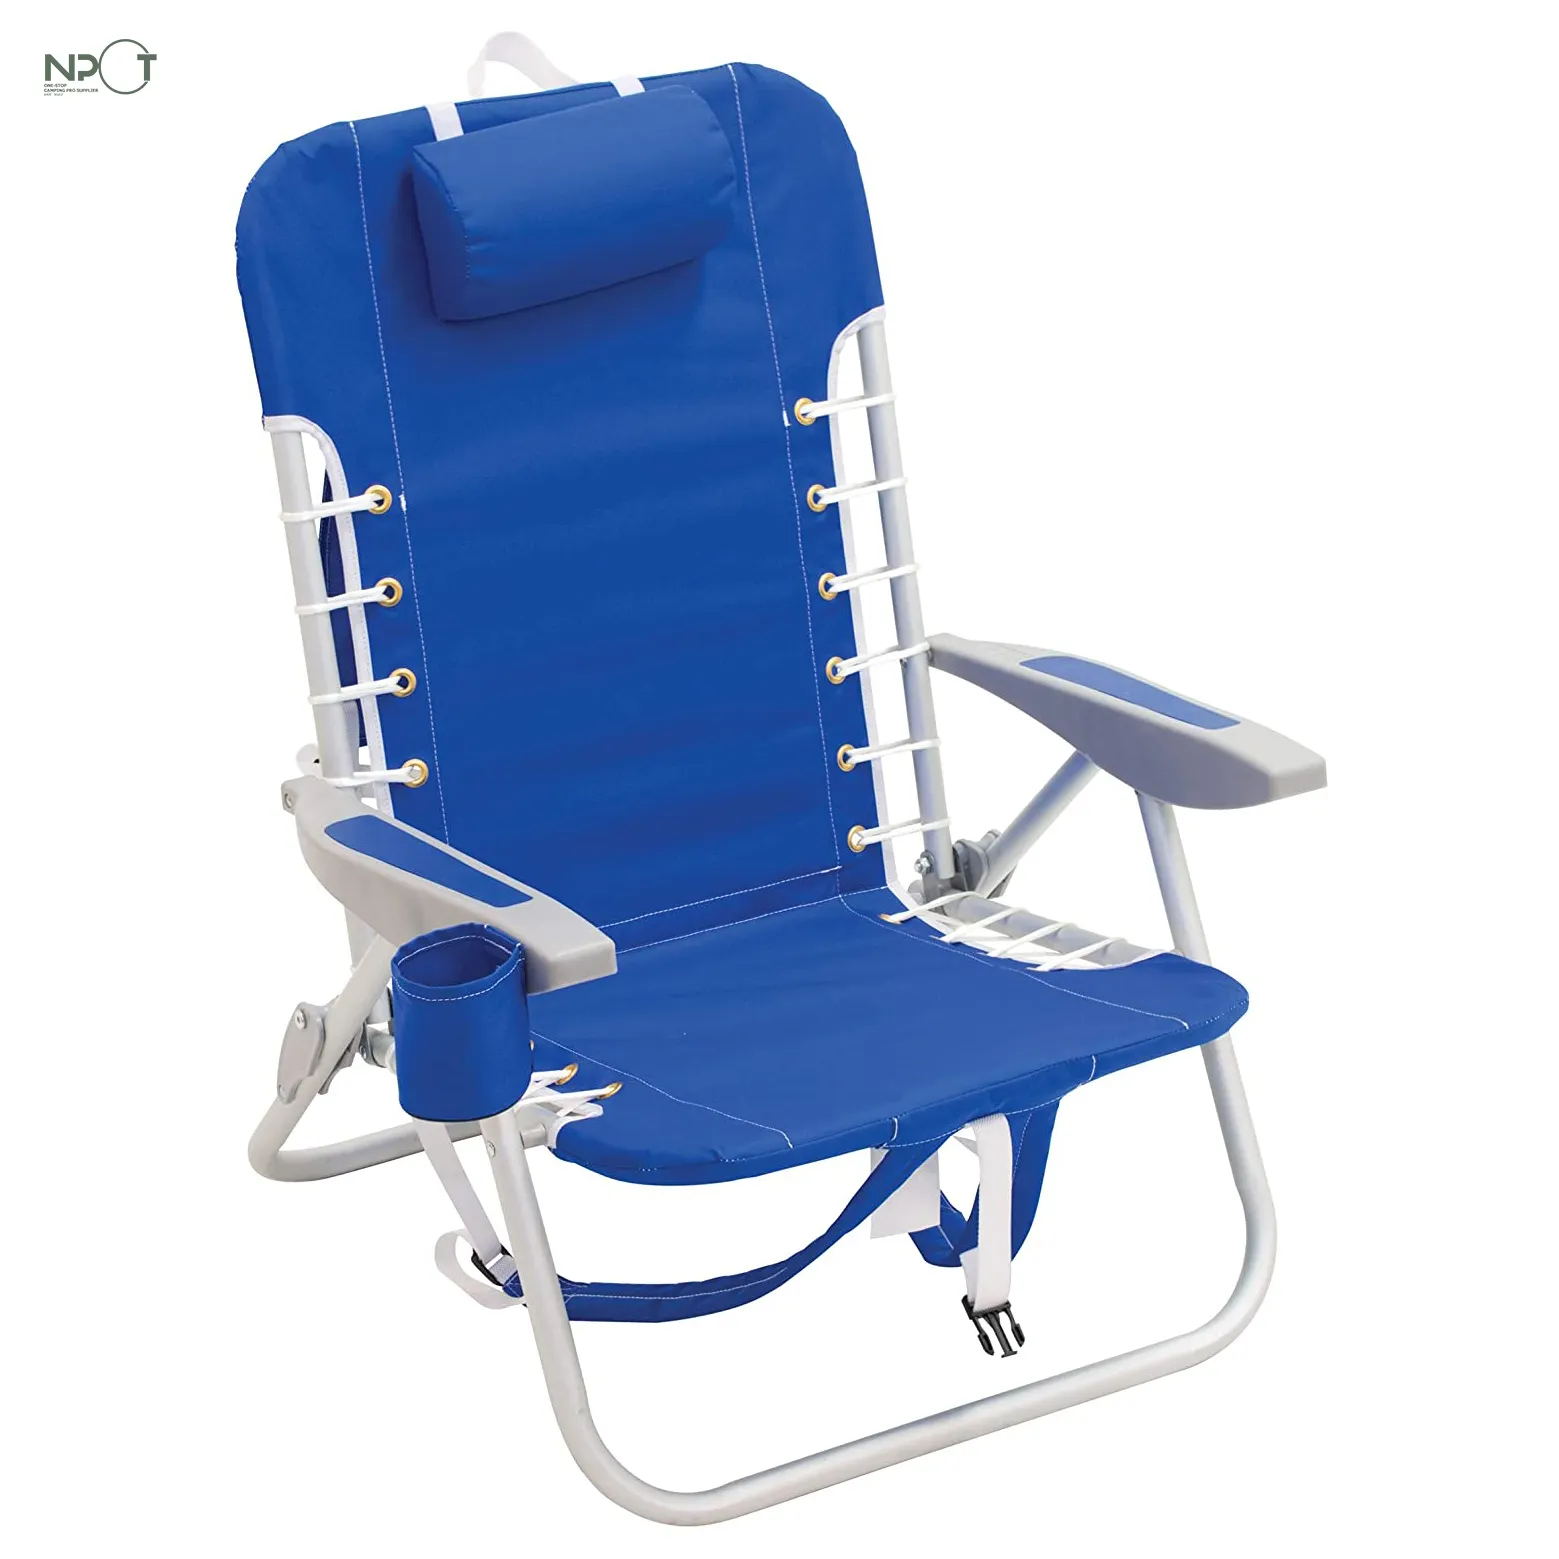 NPOT üst alır 4-pozisyon dantel-up sırt çantası katlanır plaj sandalyesi, Deluxe alüminyum büyük depolama cep sırt çantası sandalye